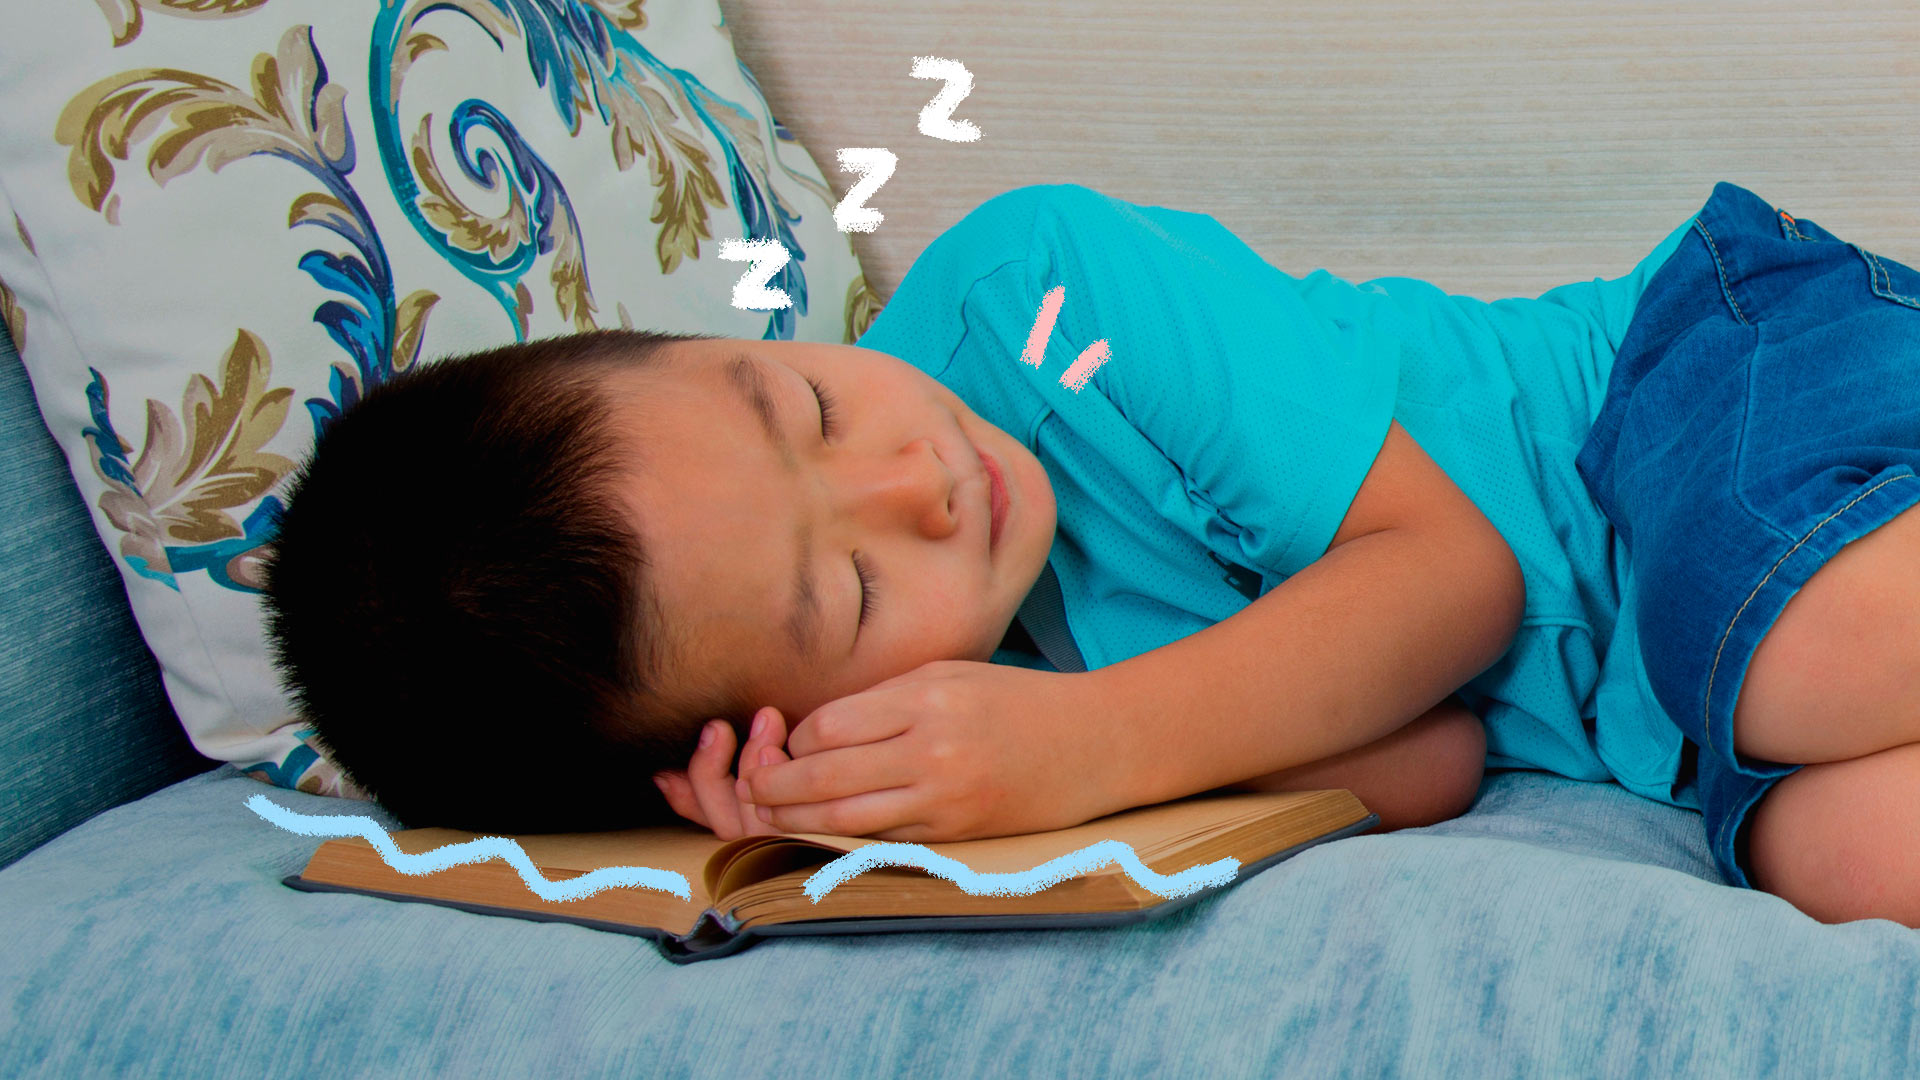 Livros para hora de dormir: foto de um menino que adormeceu com a cabeça apoiada no livro.